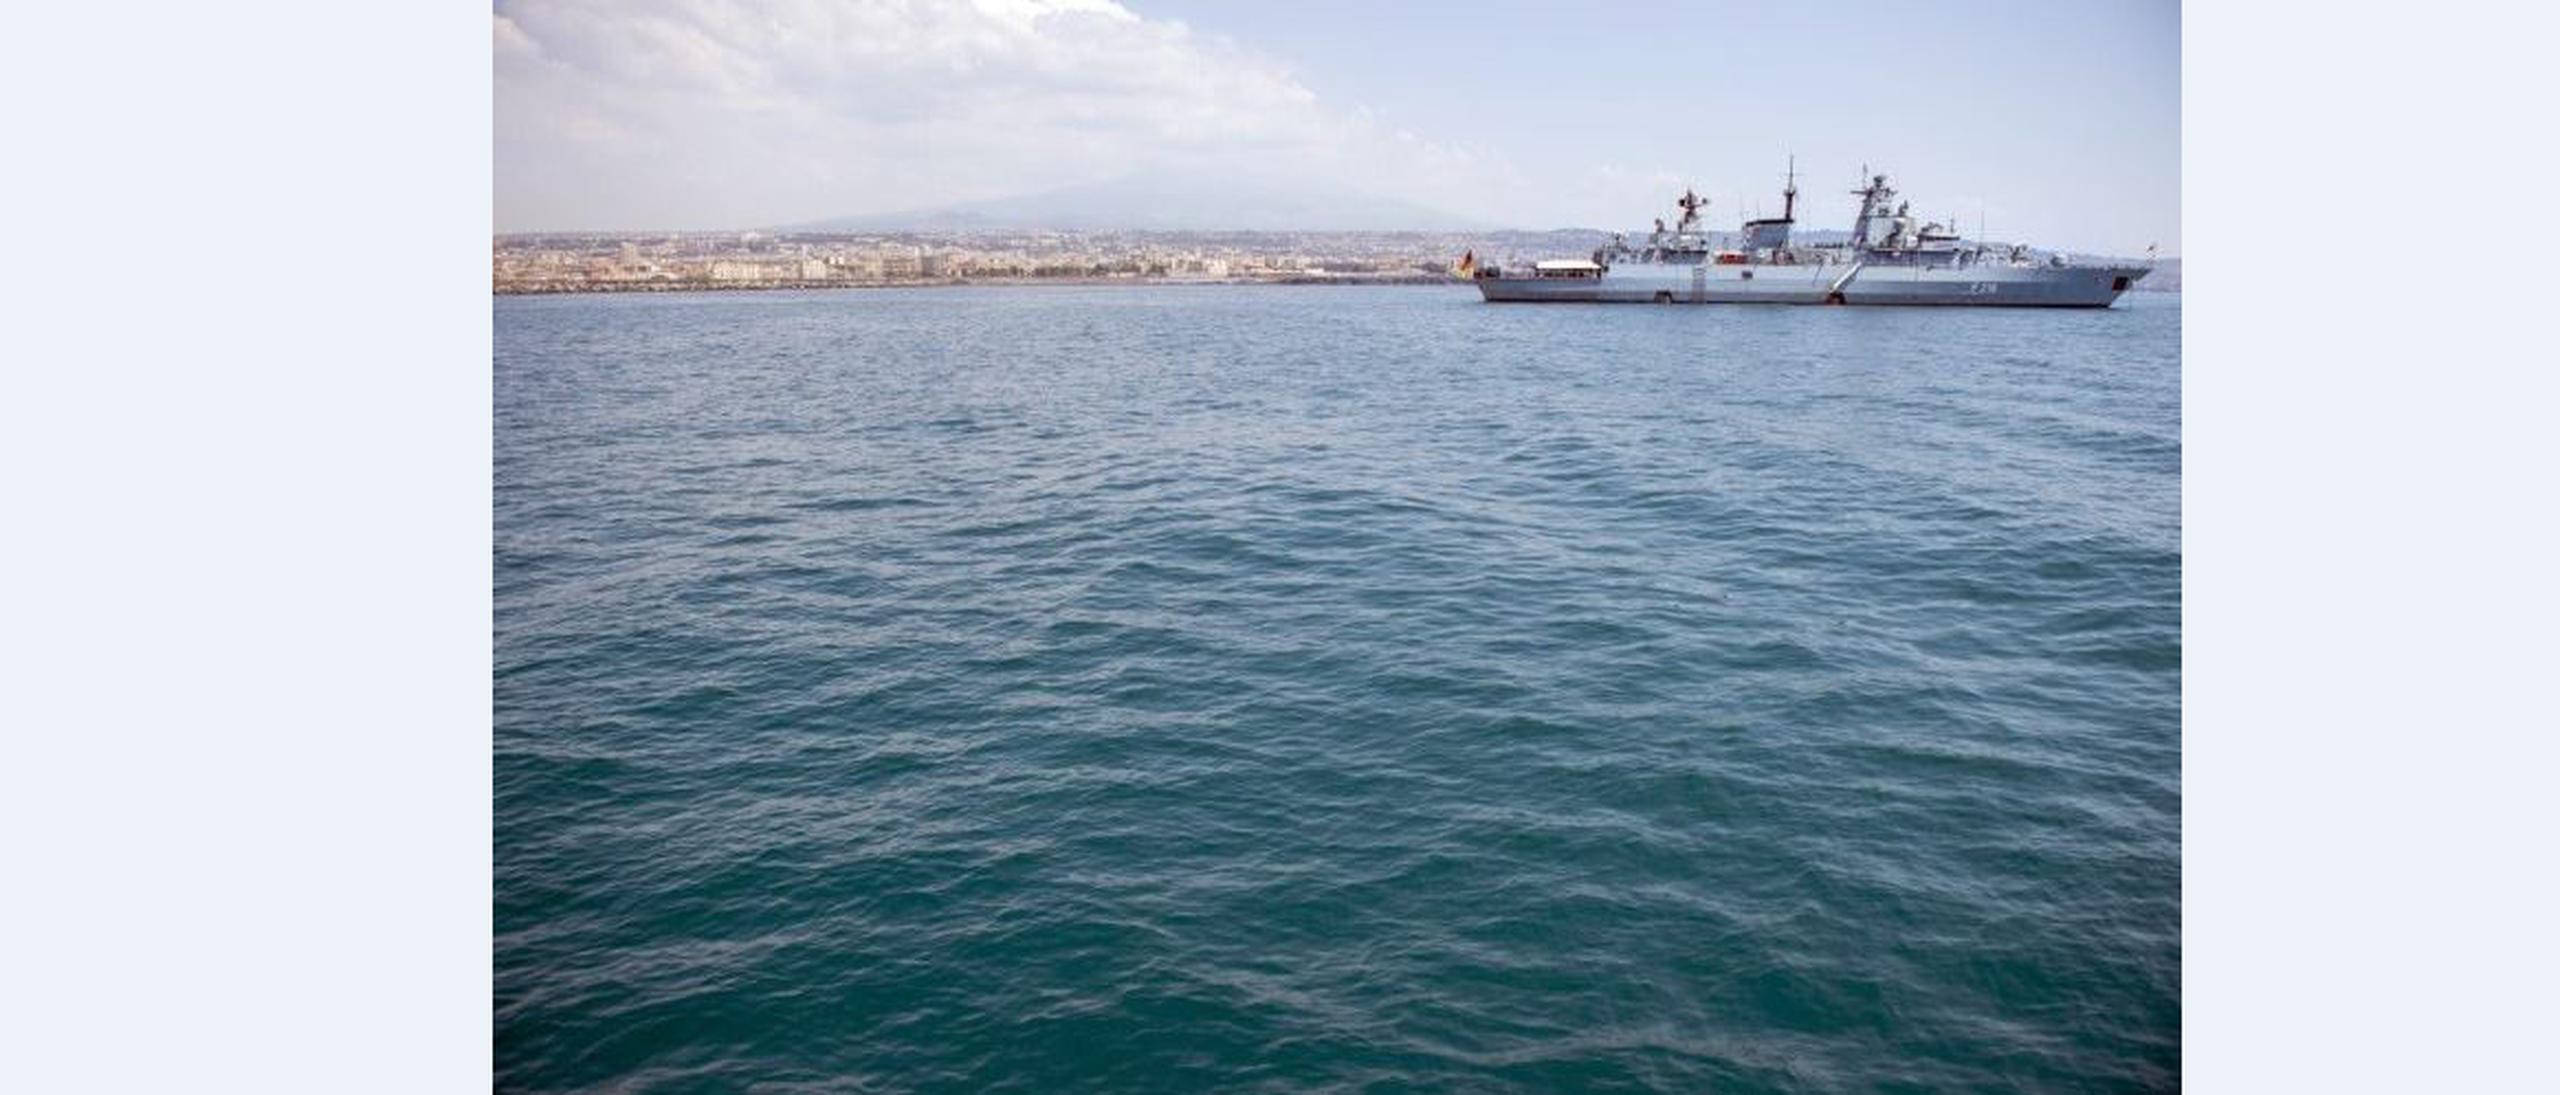 La semana pasada varios barcos europeos ayudaron al rescate de inmigrantes en una tragedia similar. (AFP)